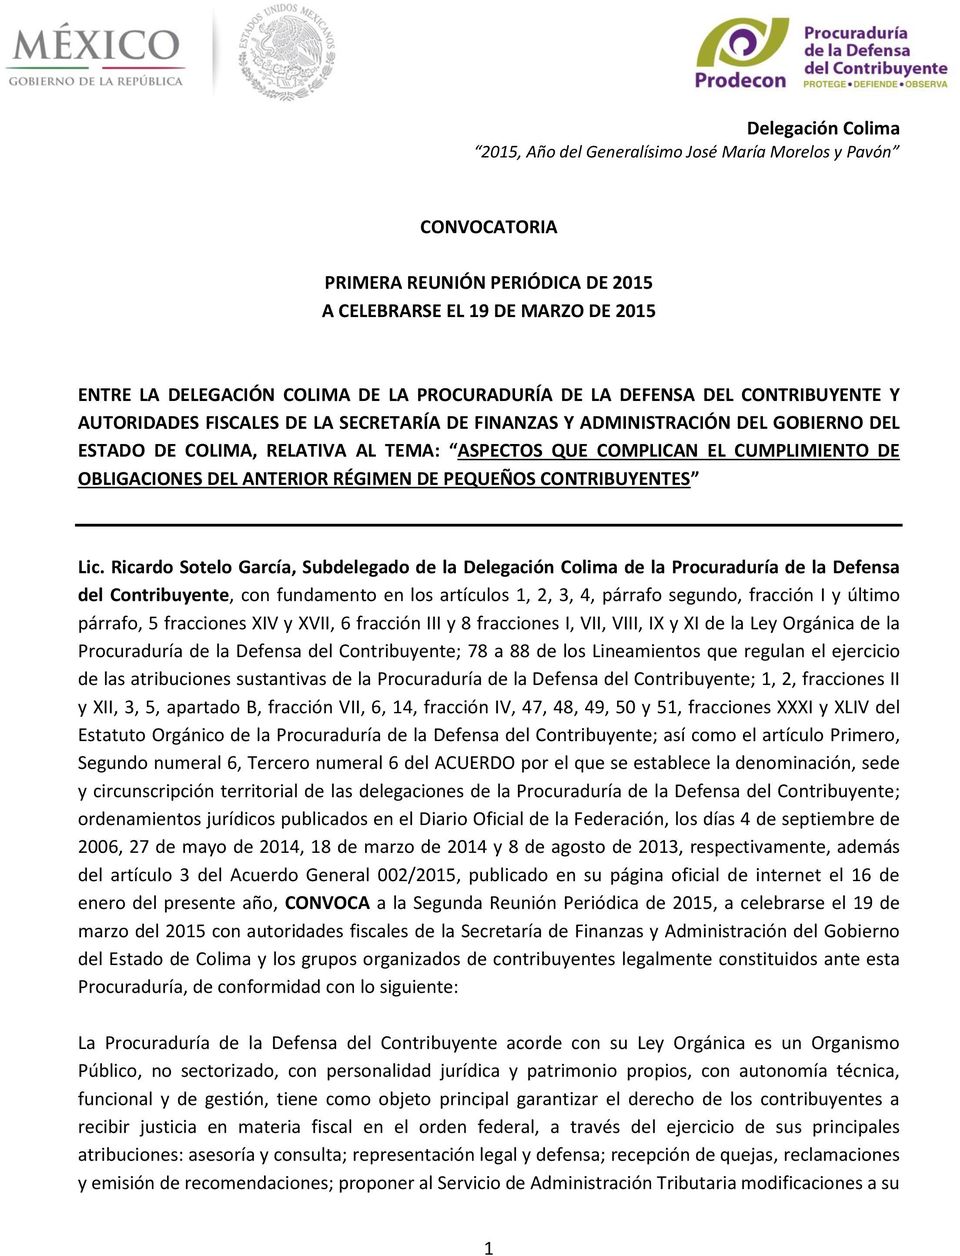 Ricardo Sotelo García, Subdelegado de la Delegación Colima de la Procuraduría de la Defensa del Contribuyente, con fundamento en los artículos 1, 2, 3, 4, párrafo segundo, fracción I y último